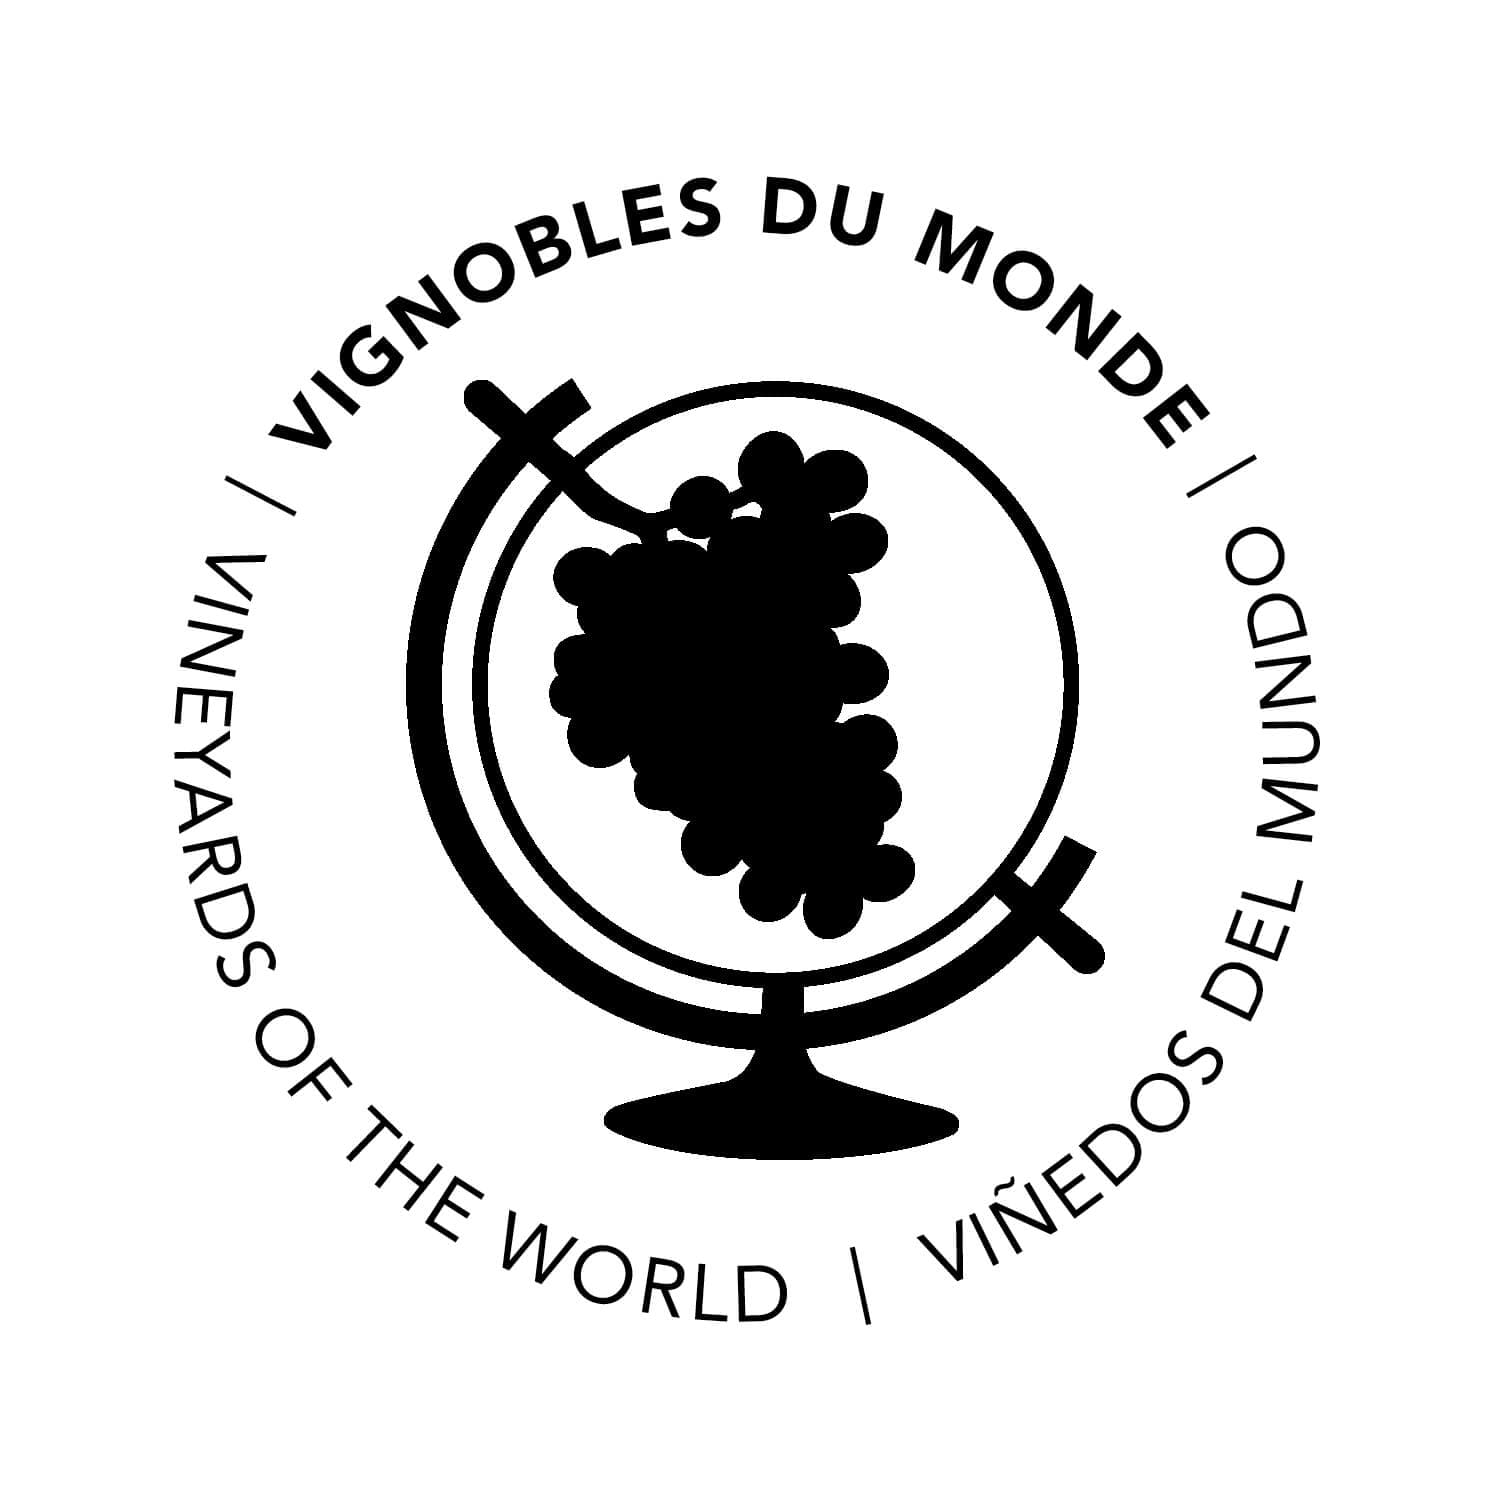 pictogramme vignobles du monde dessiné par ichetkar pour la nouvelle signalétique de la cité du vin de bordeaux